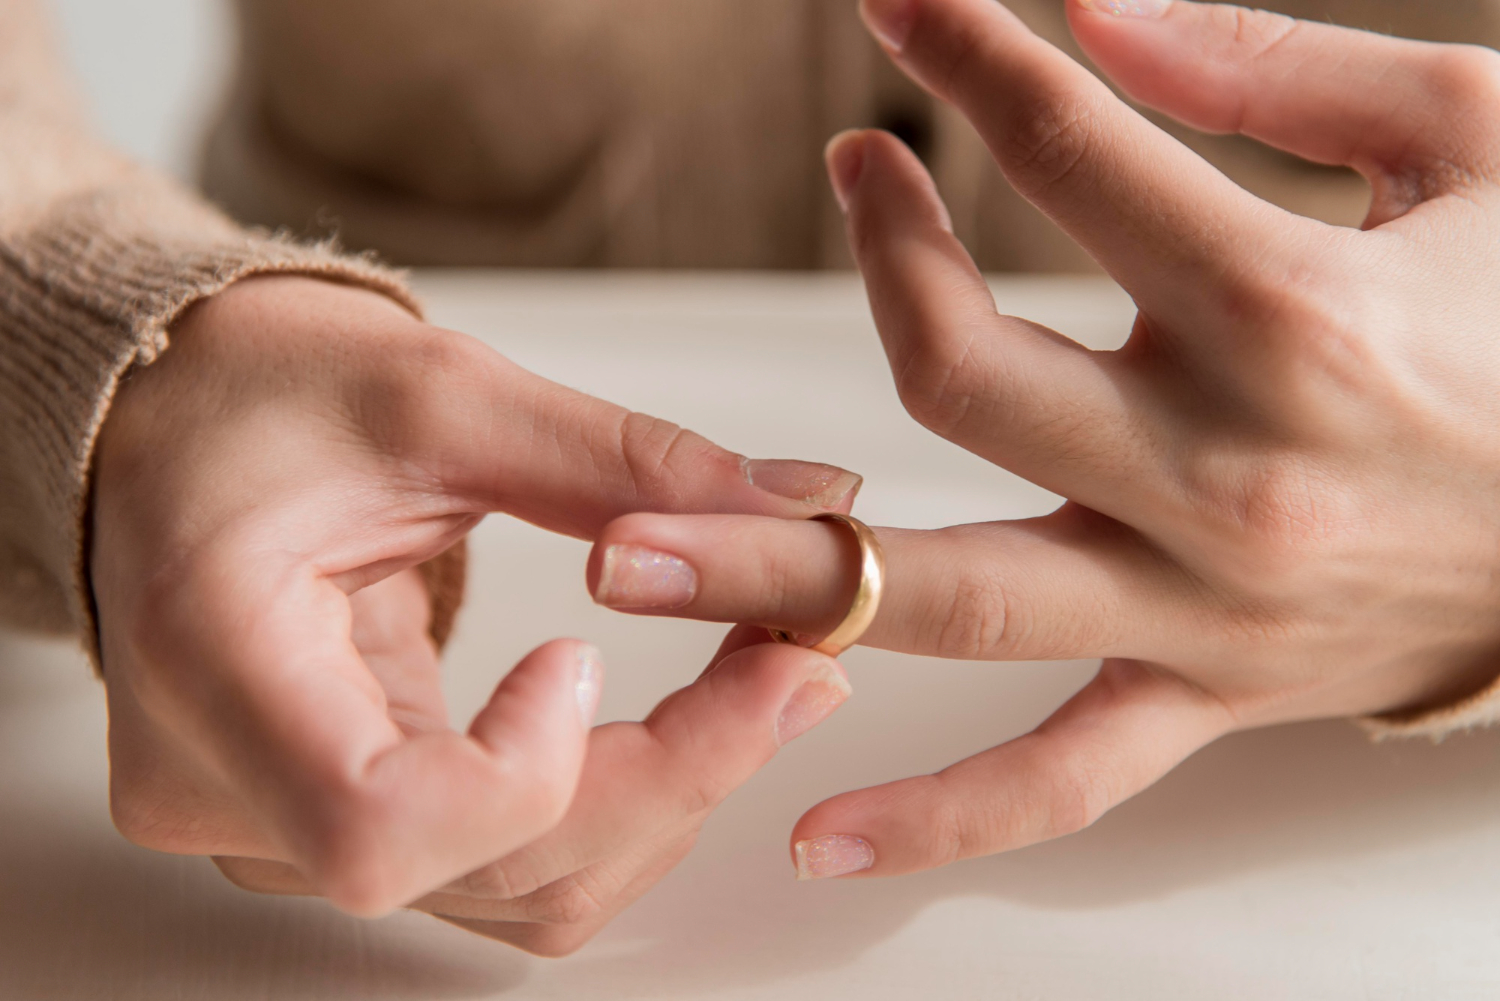 Измерить размер кольца девушке в домашних условиях без погрешности. Фото © Shutterstock